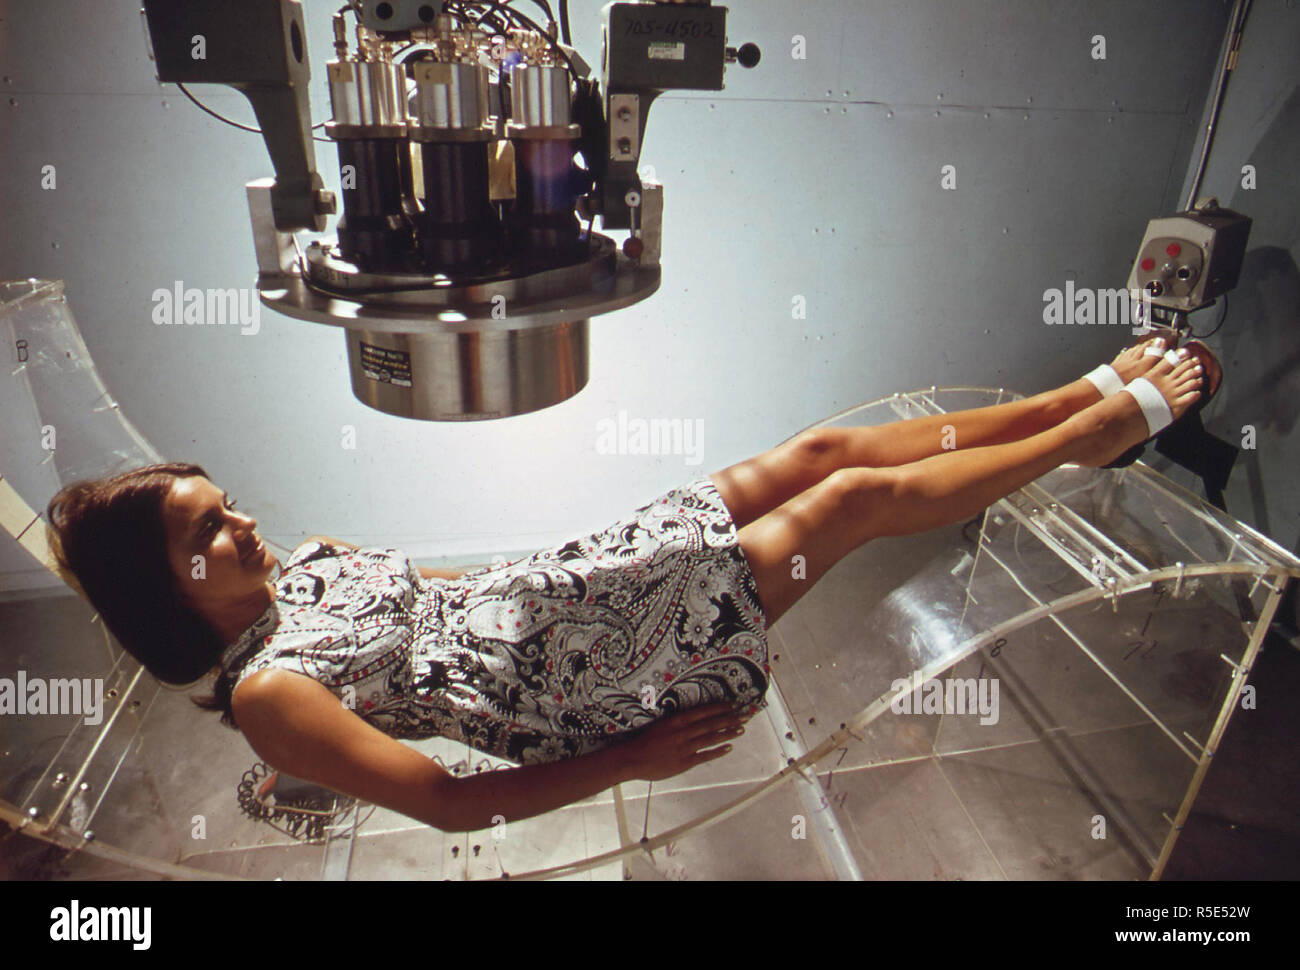 Contador de cuerpo entero se utiliza para medir los niveles de radiación natural, junio de 1972 Foto de stock